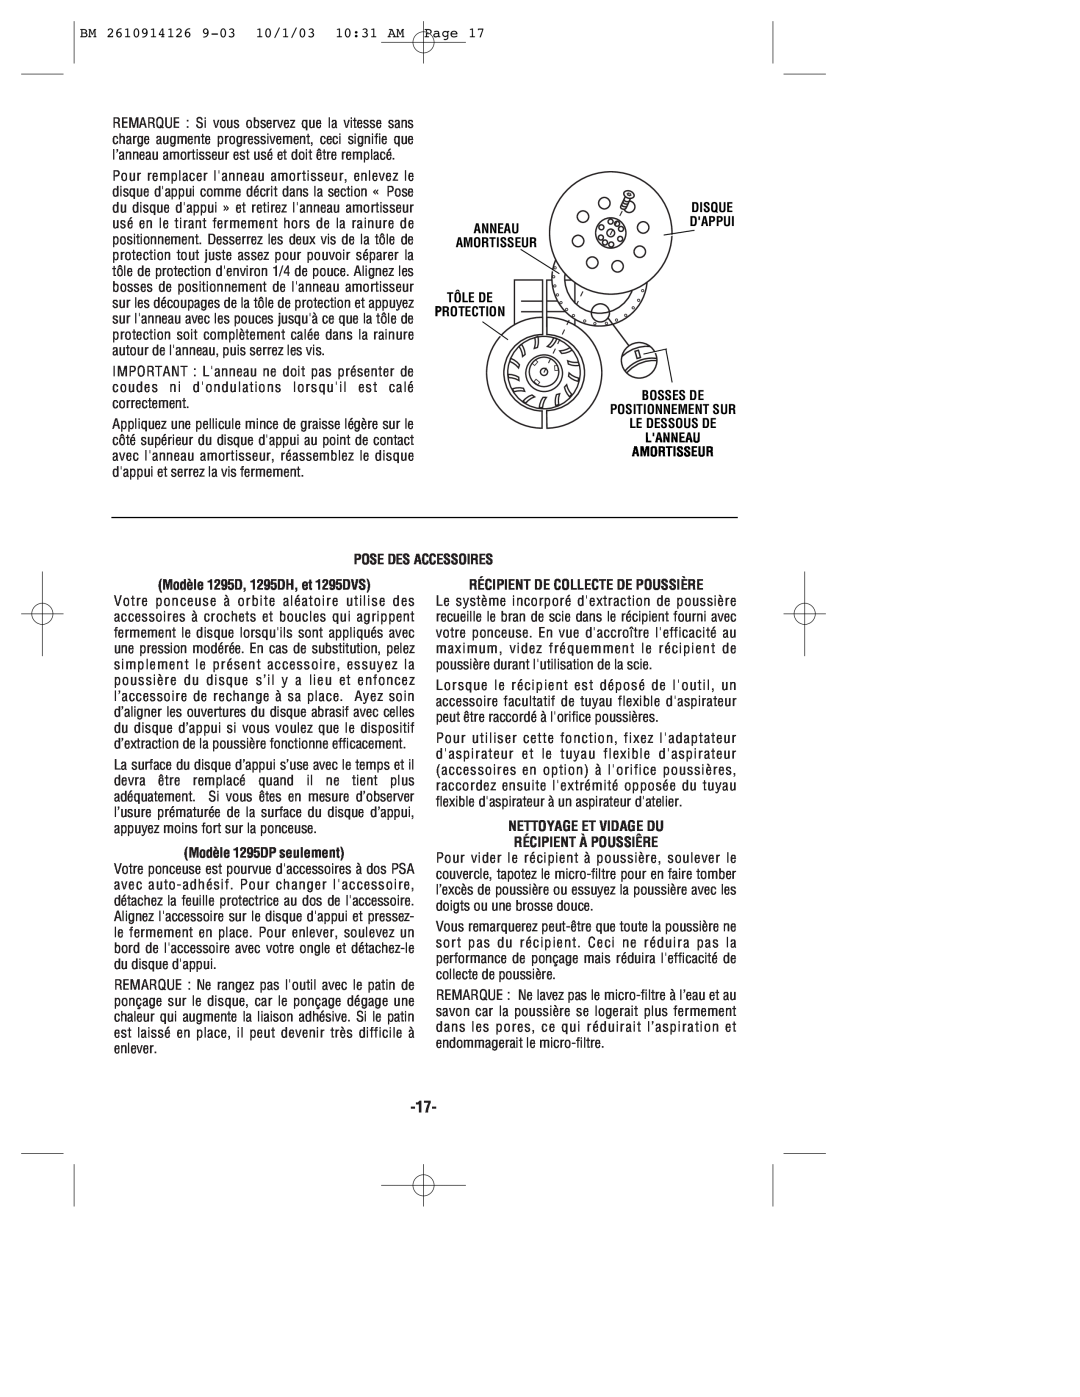 Bosch Power Tools manual Pose Des Accessoires, Modèle 1295D, 1295DH, et 1295DVS, Modèle 1295DP seulement 